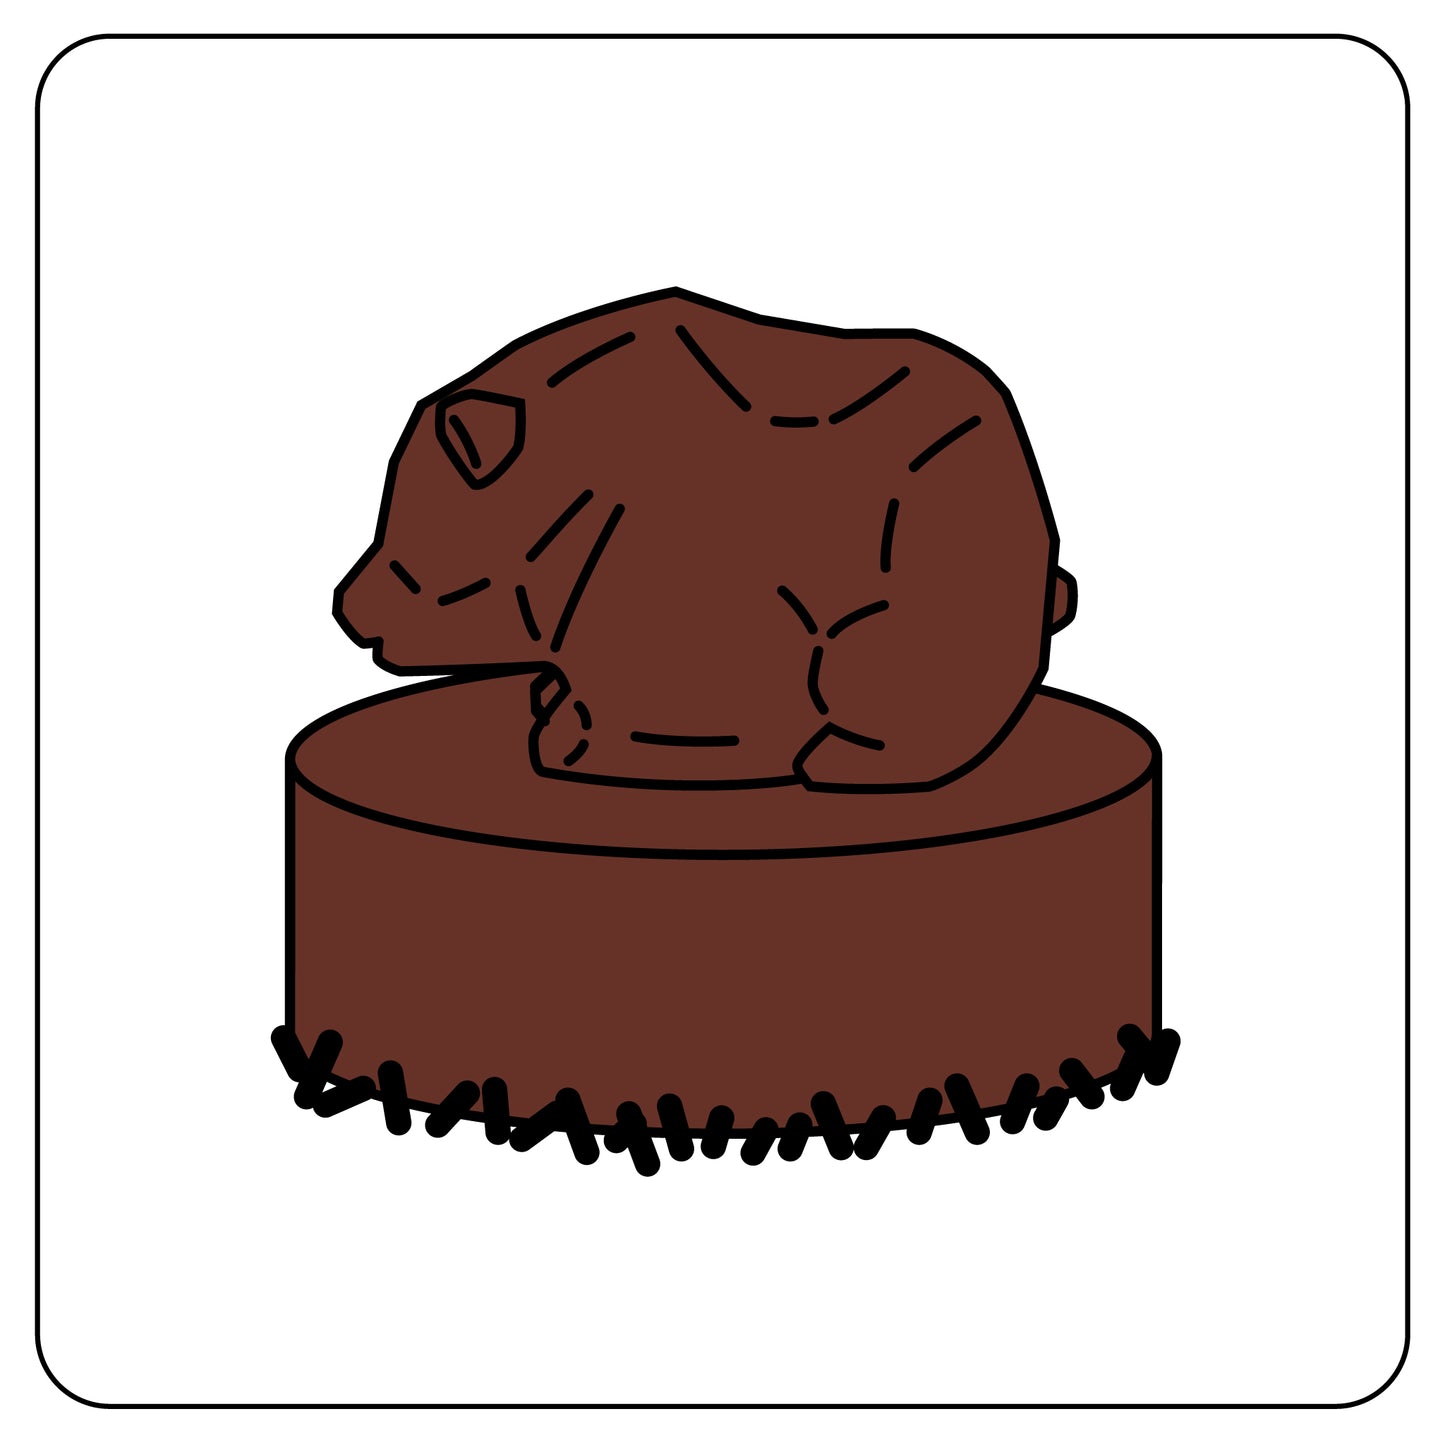 チョコレートケーキ 12cm